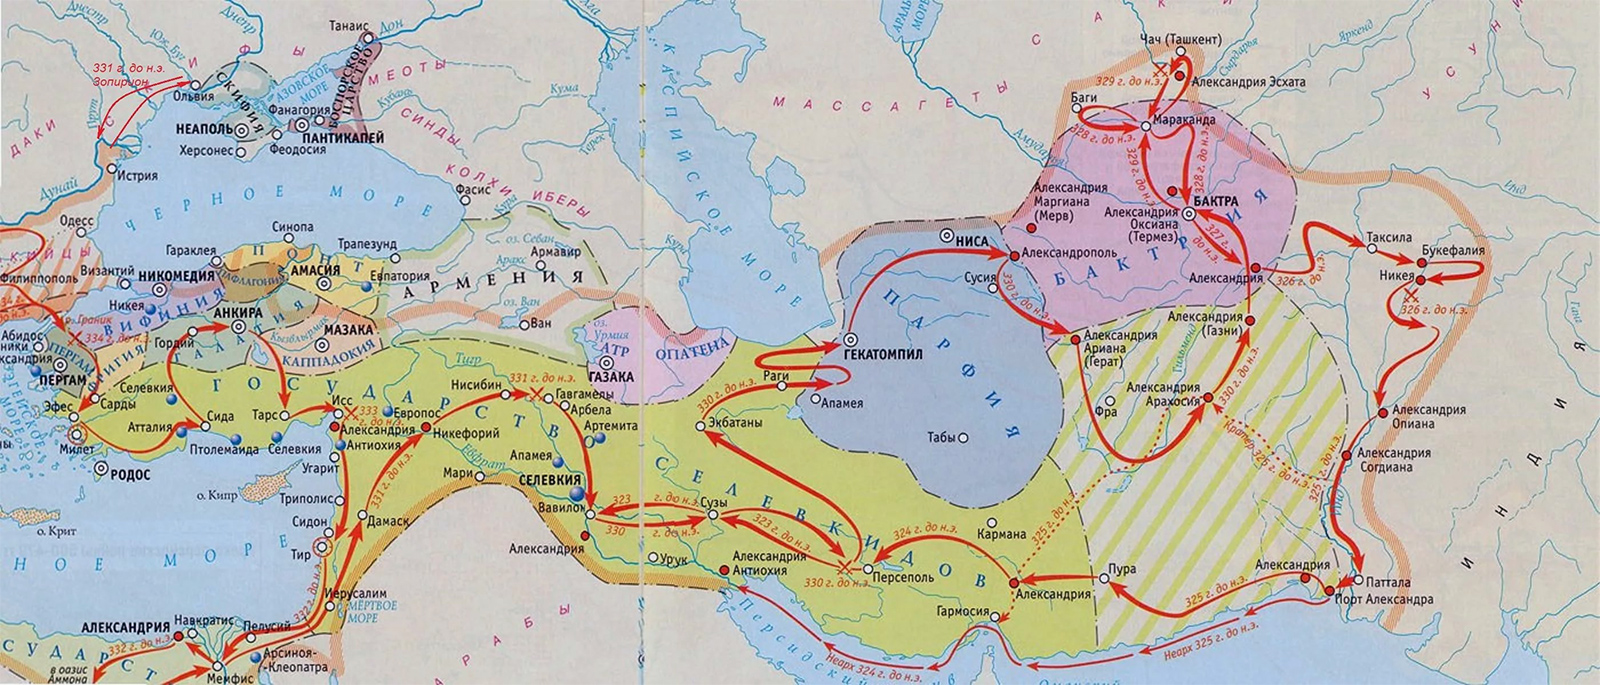 Карта индийского похода Александра Македонского. 